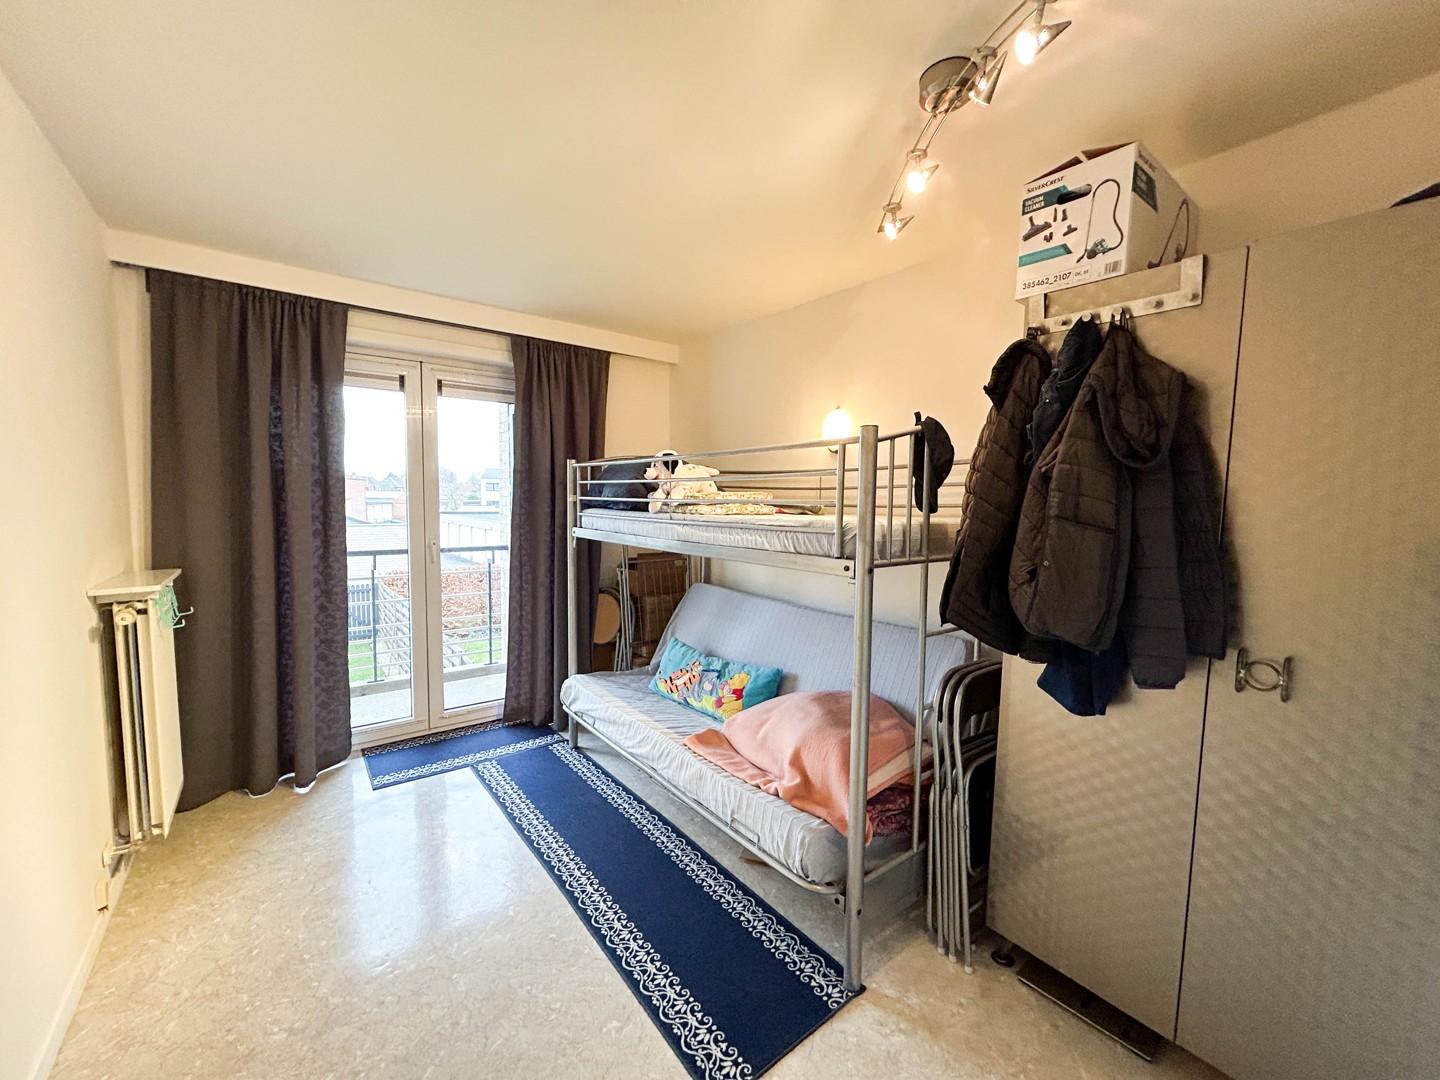 Instapklaar 2-slaapkamer appartement met garage te Roeselare!